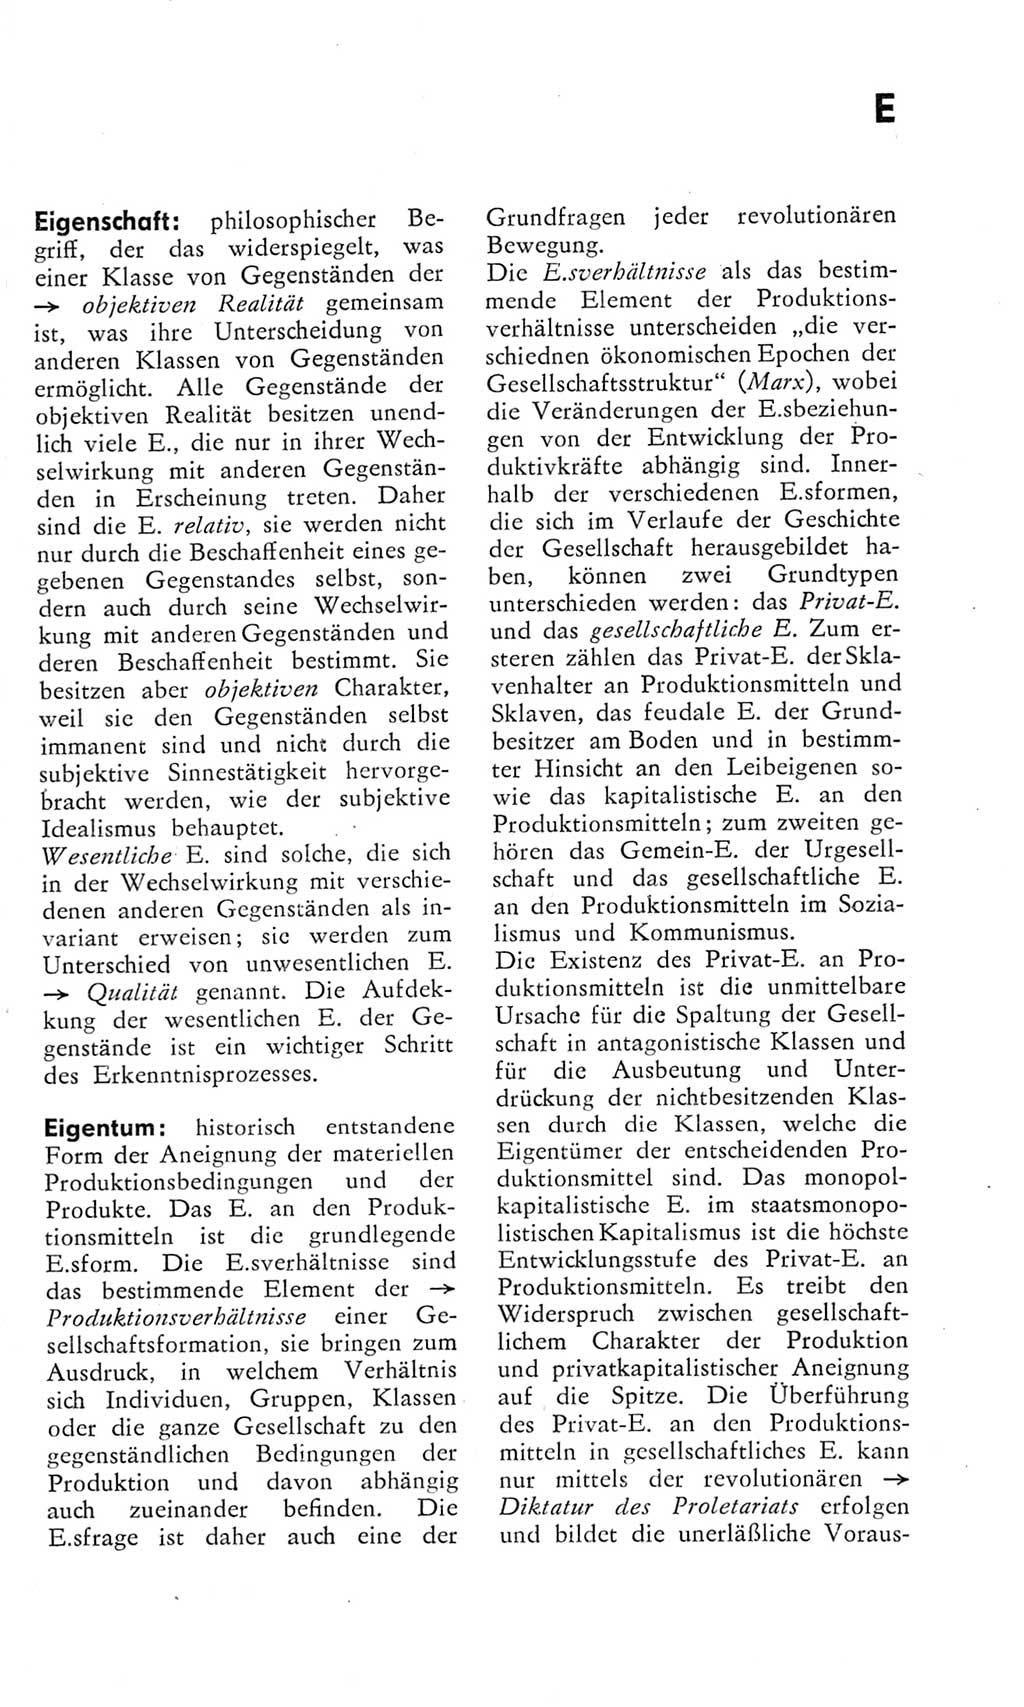 Kleines Wörterbuch der marxistisch-leninistischen Philosophie [Deutsche Demokratische Republik (DDR)] 1975, Seite 73 (Kl. Wb. ML Phil. DDR 1975, S. 73)